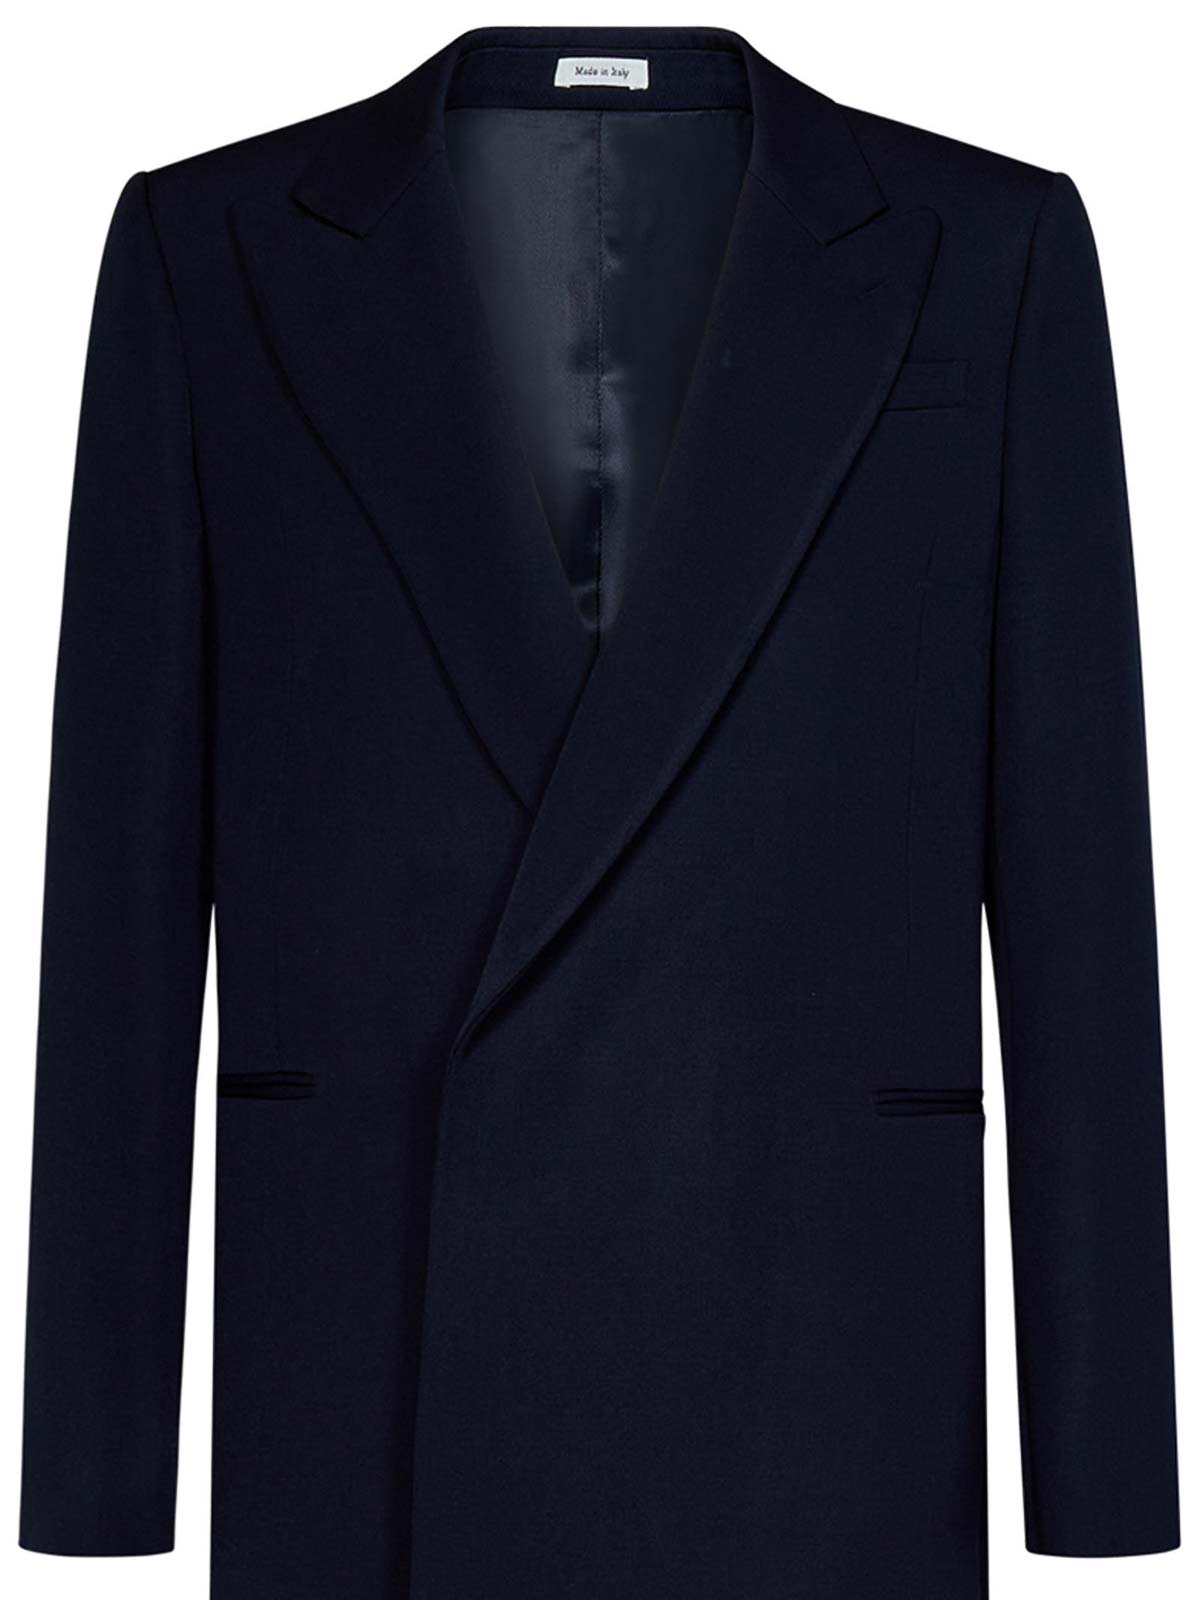 Shop Alexander Mcqueen Navy Blue Wool Belted Coat